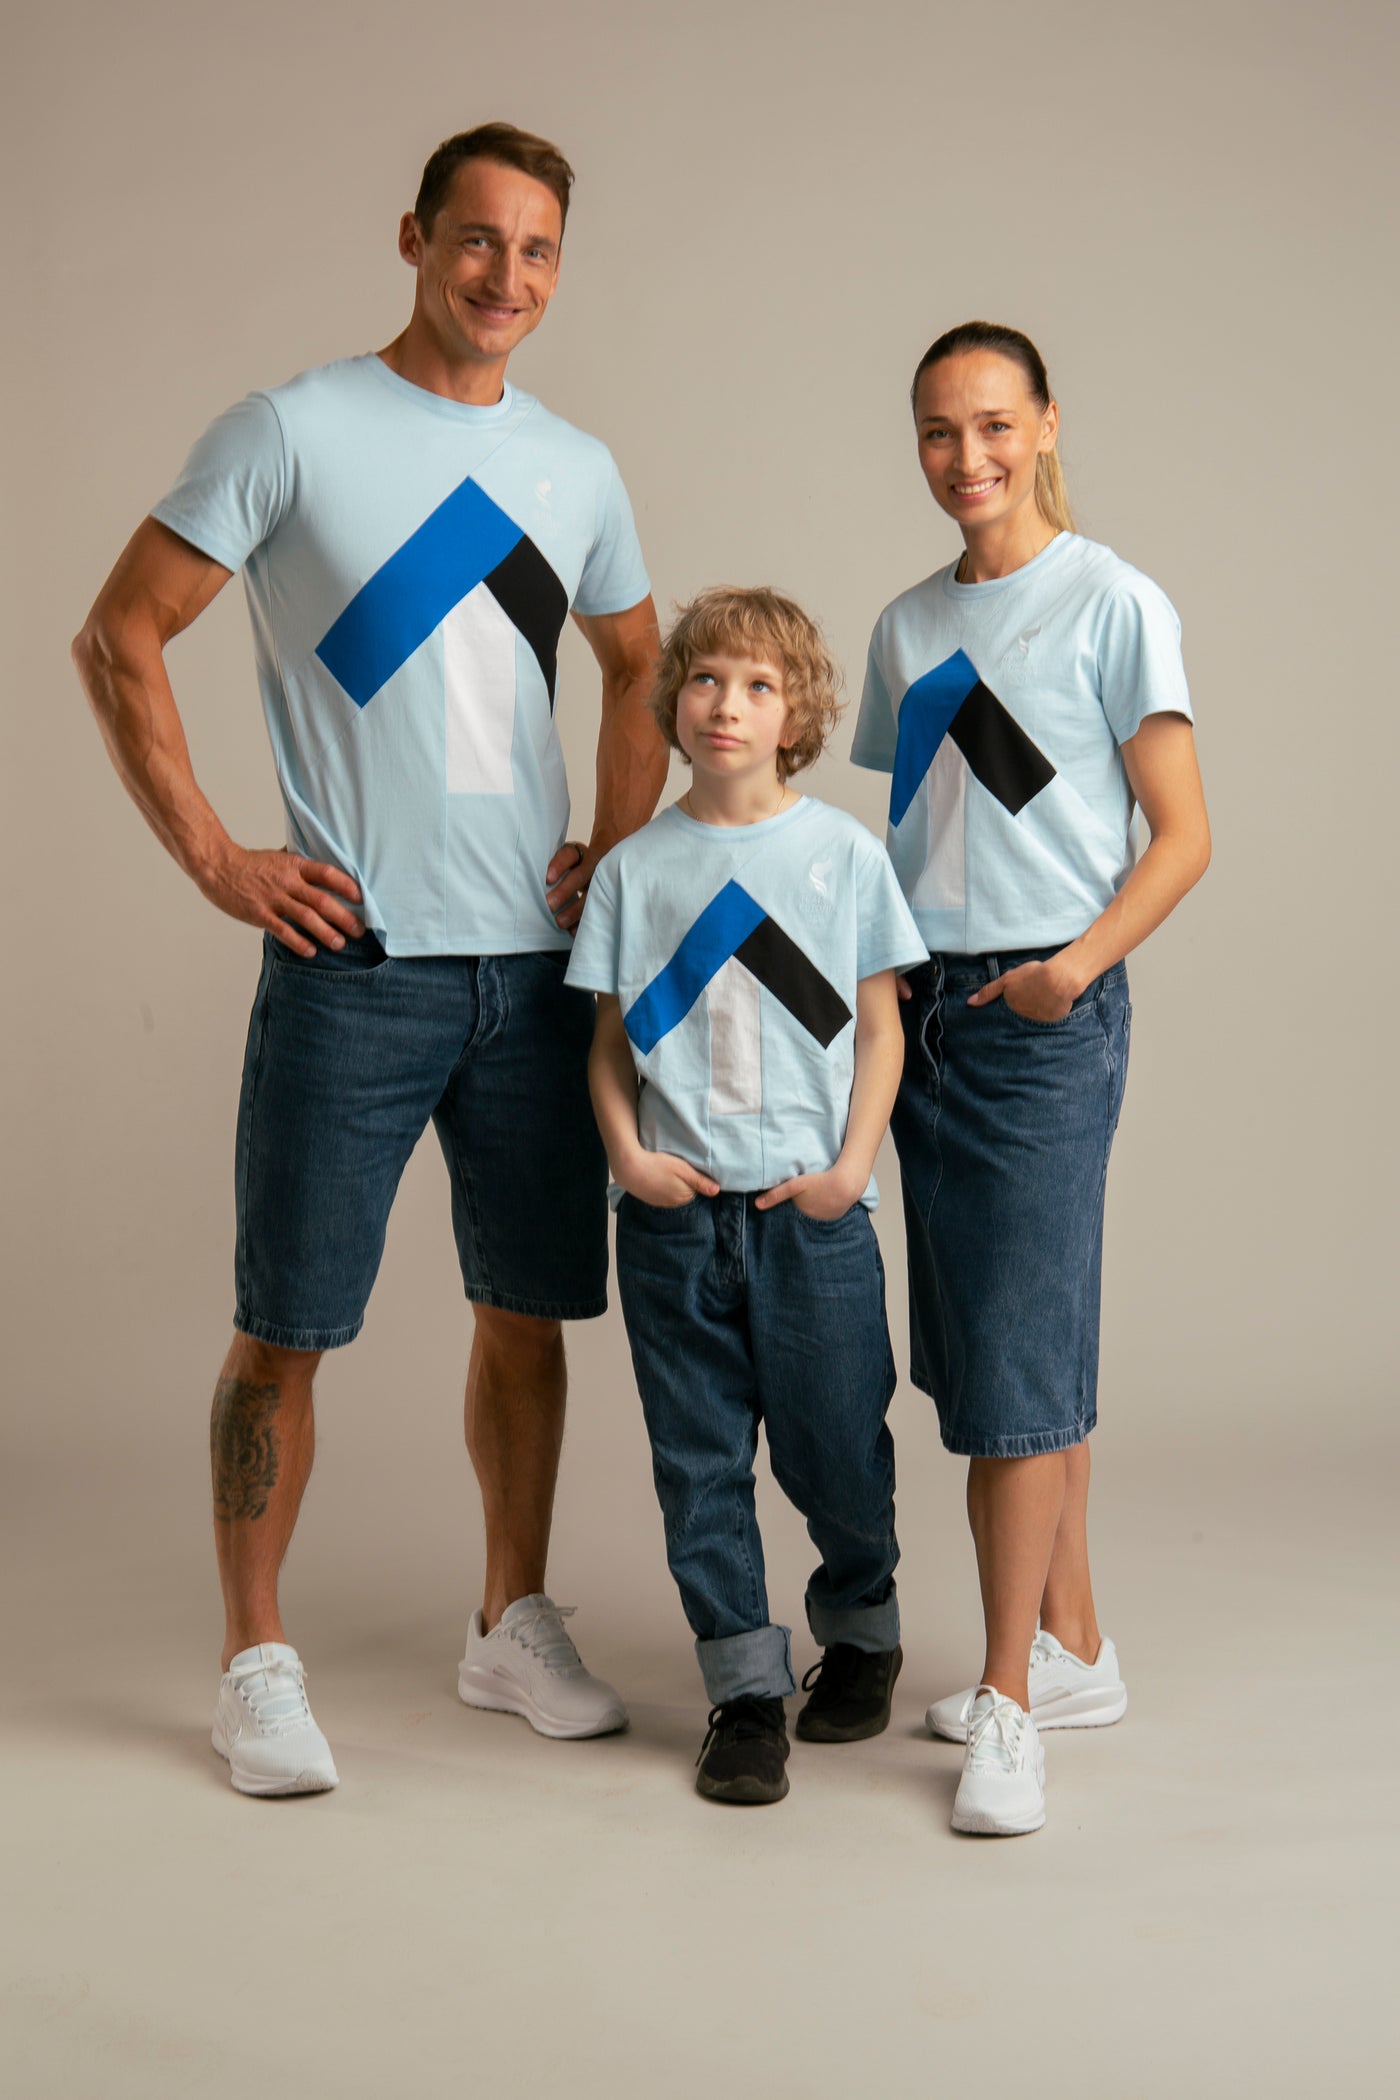 Up-shirt for women | Blue, Team Estonia